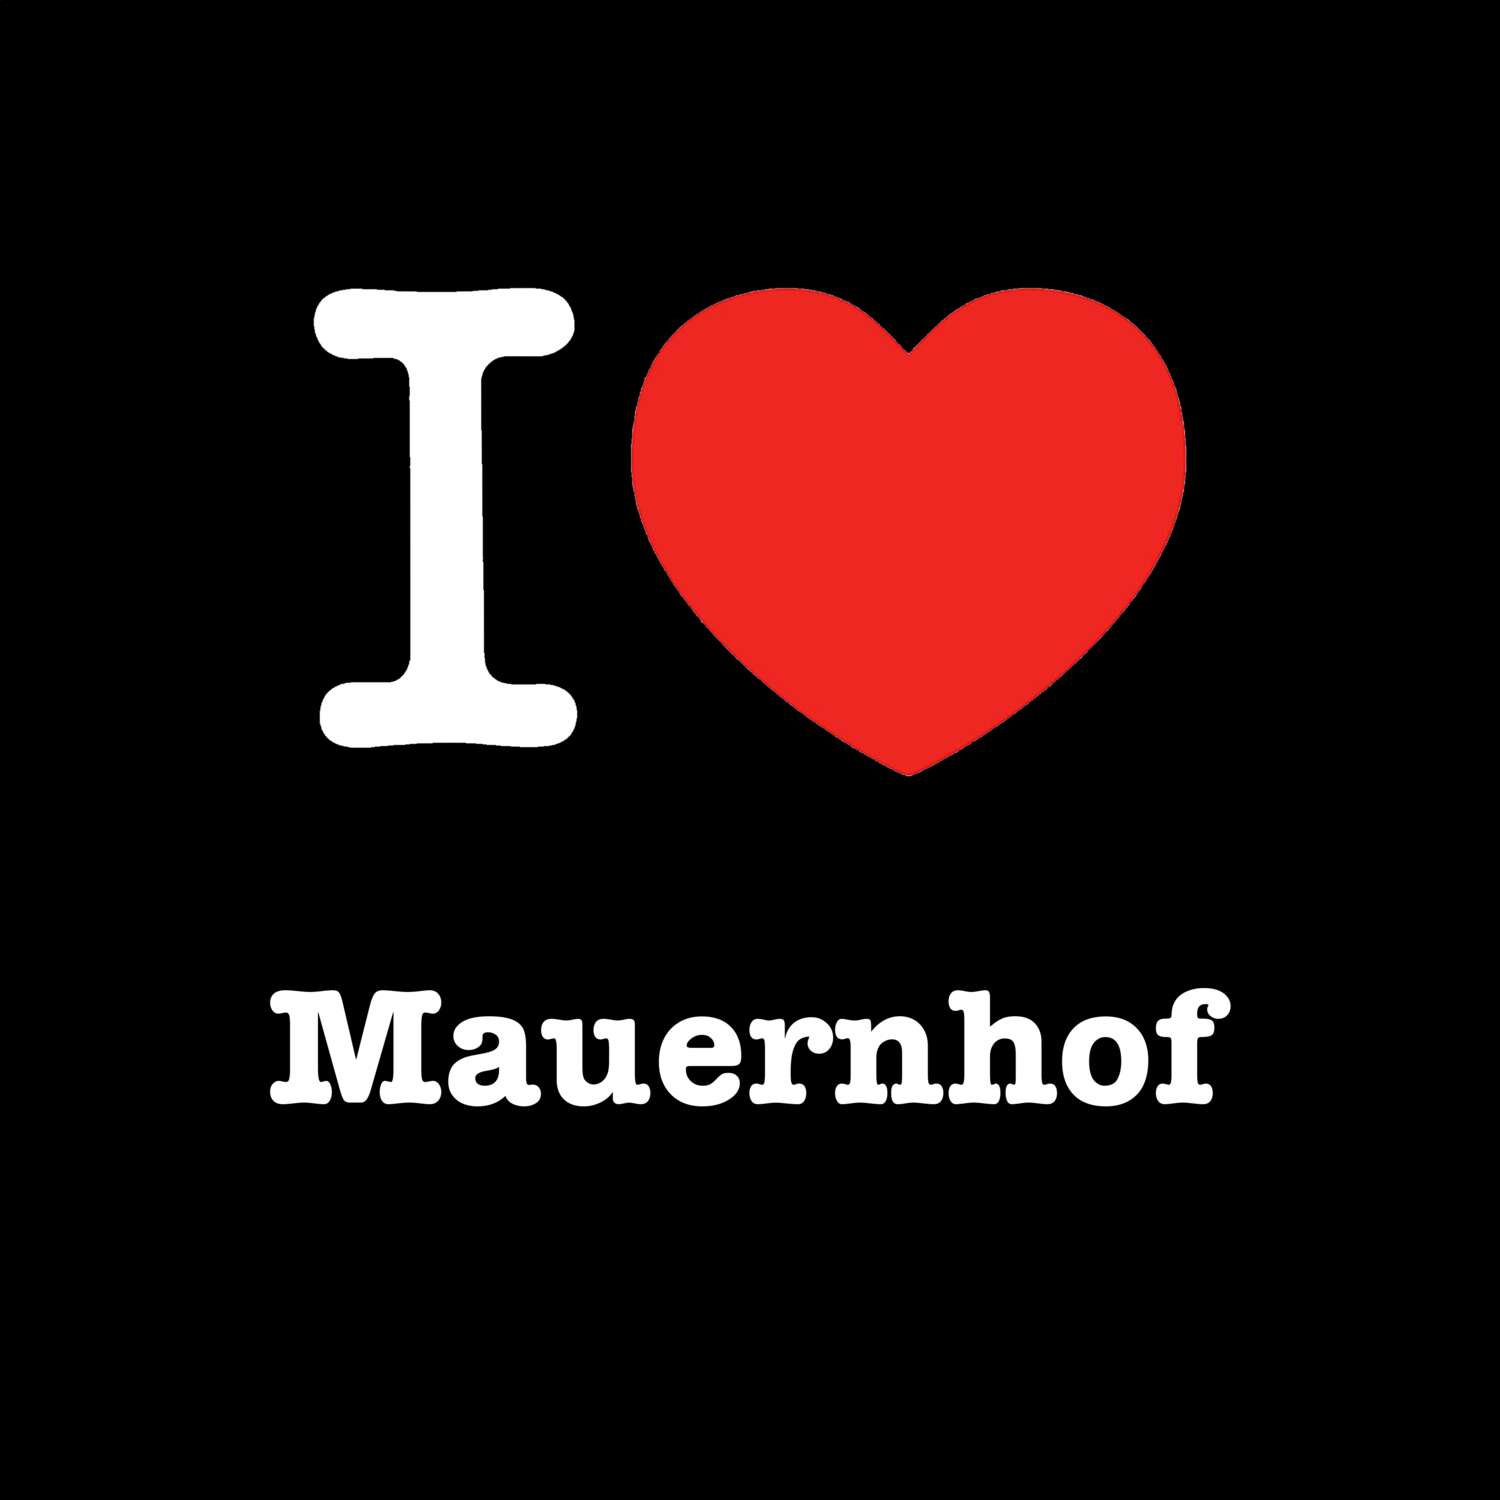 Mauernhof T-Shirt »I love«